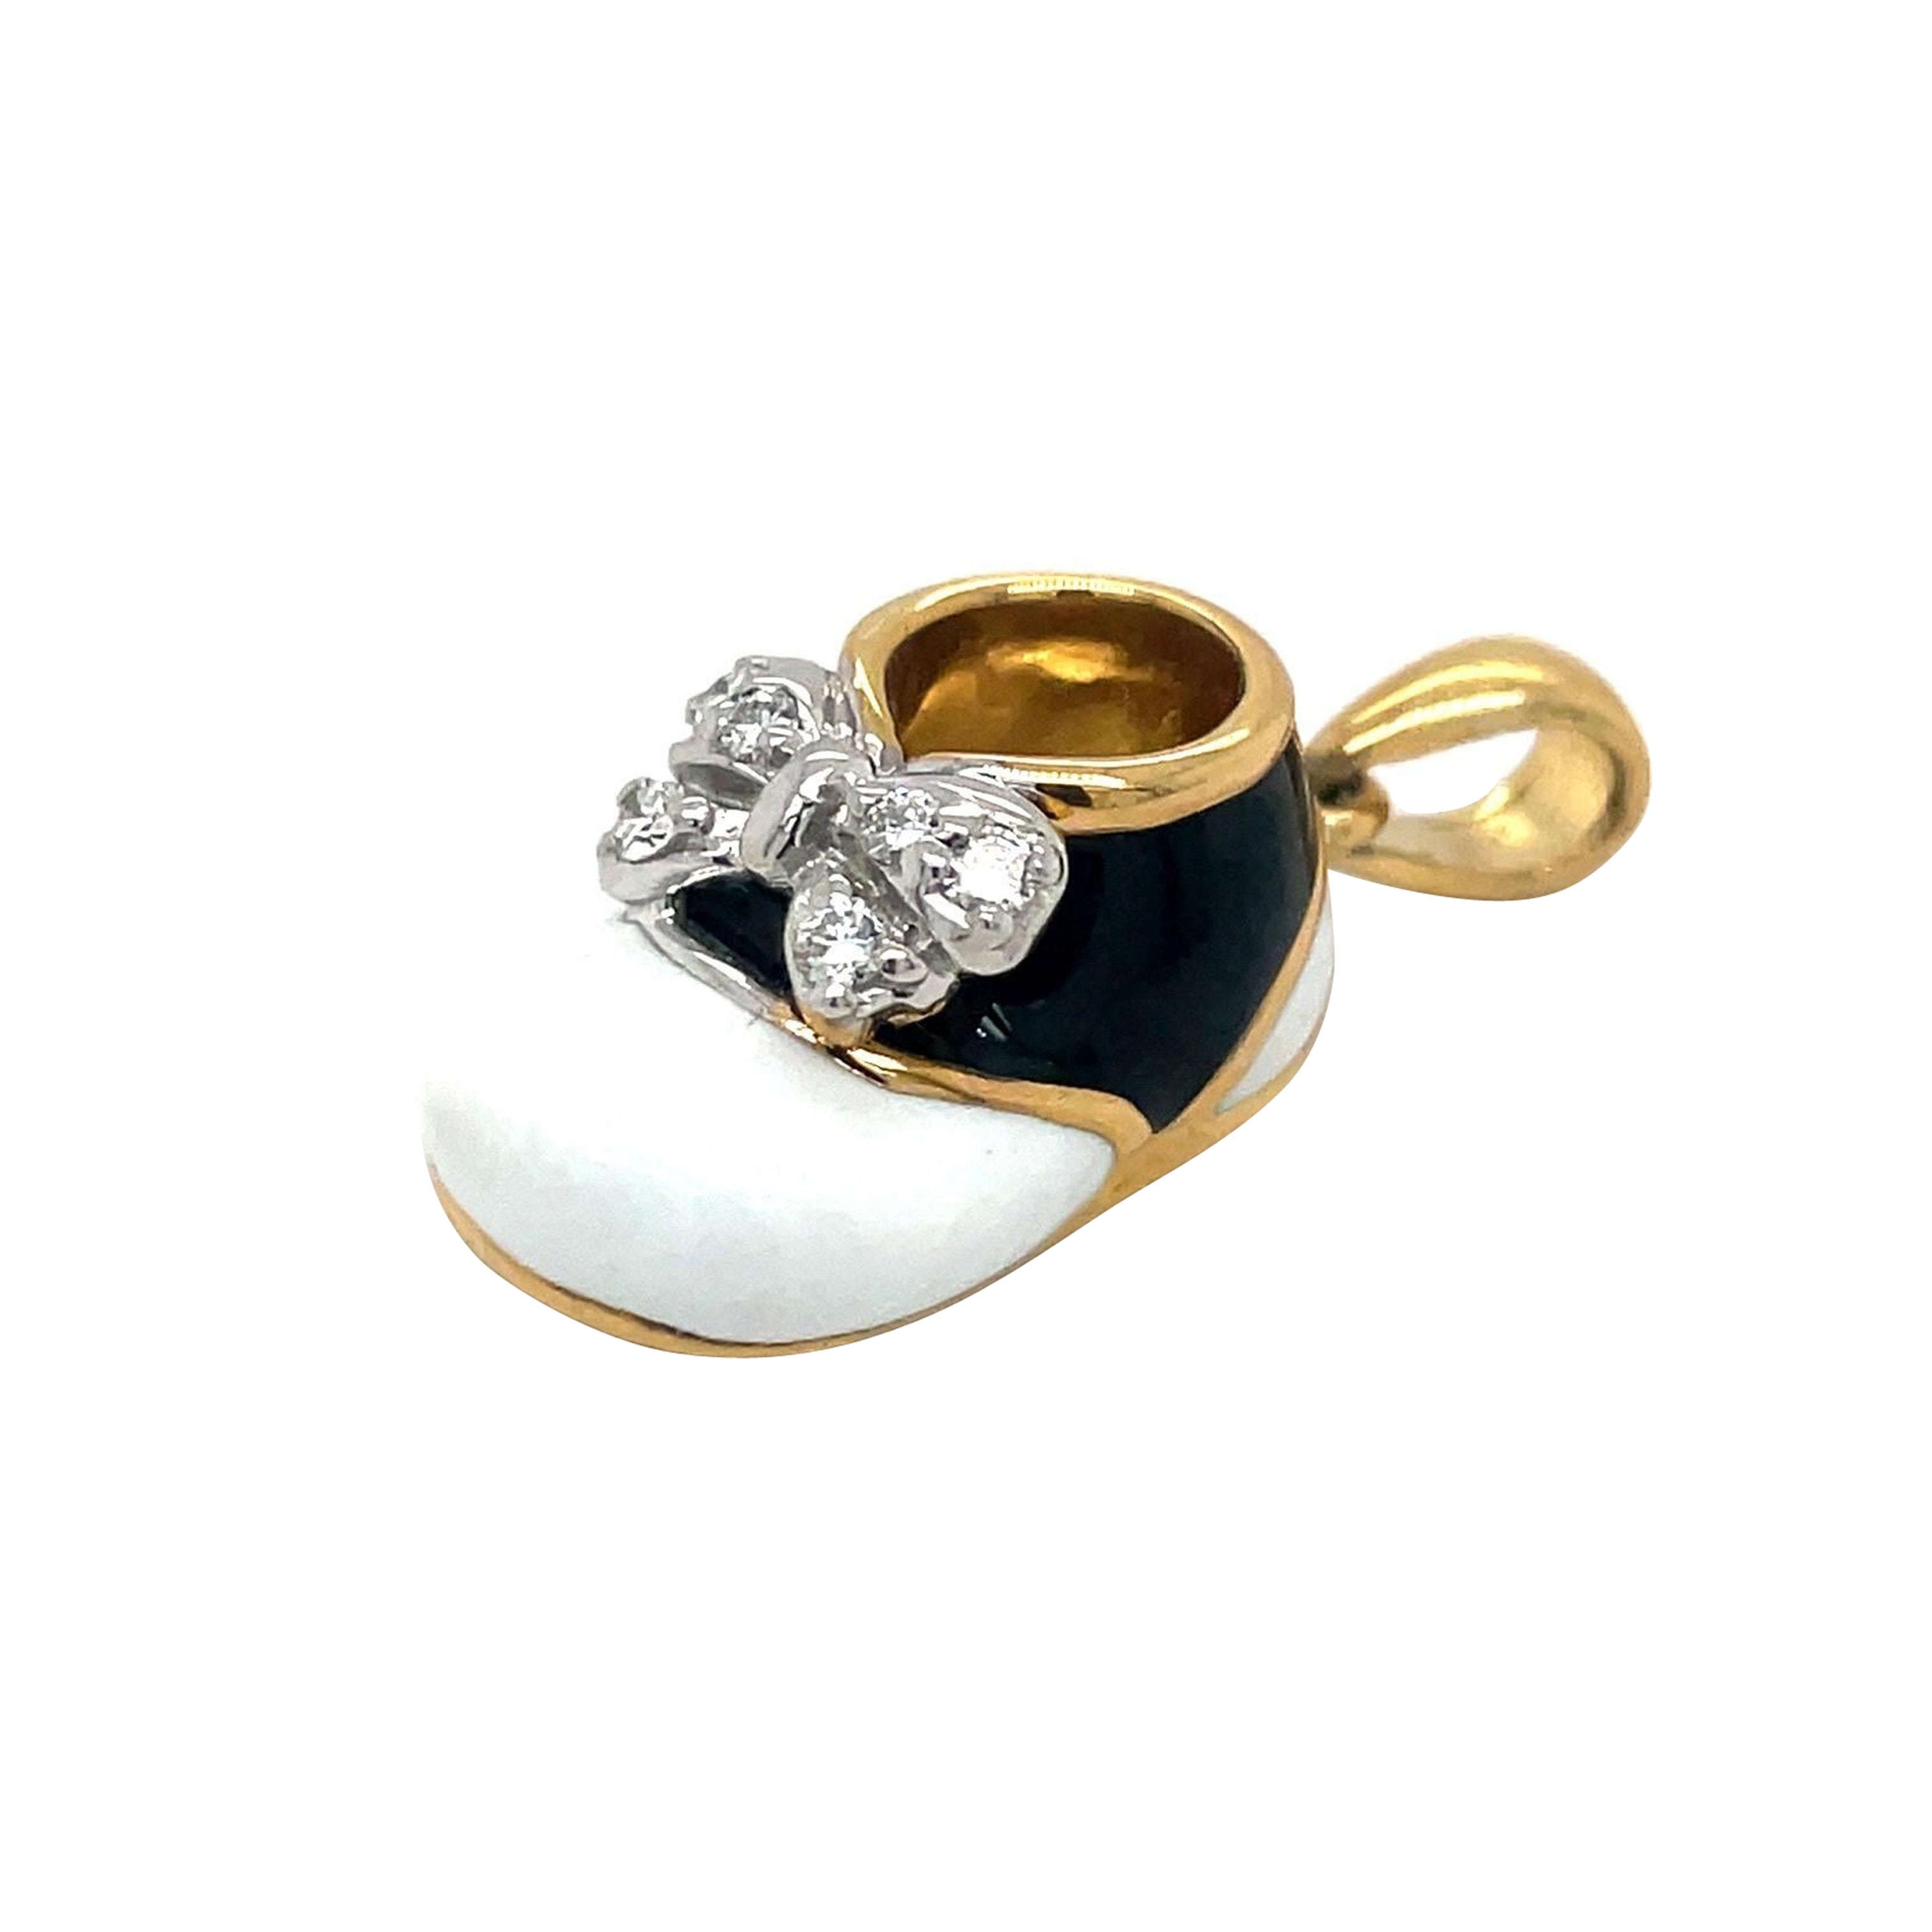 Chaussures pour bébé en or jaune 18 carats, émail noir et blanc avec nœud en diamant 0,12 carat